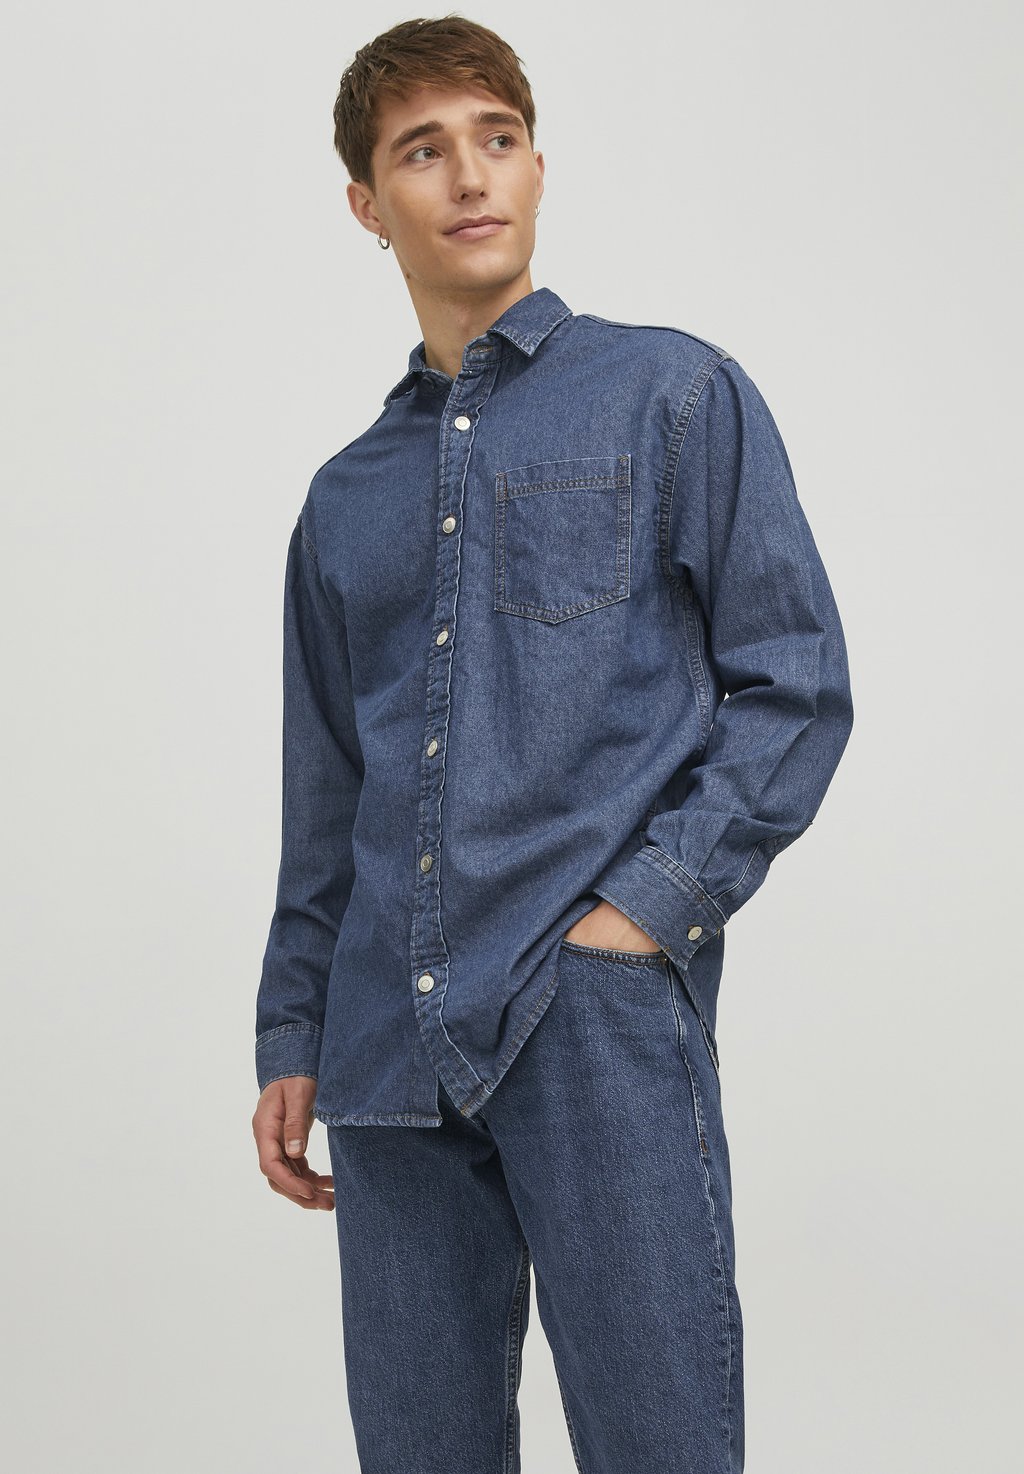 Рубашка Jack & Jones, темно-синяя джинсовая